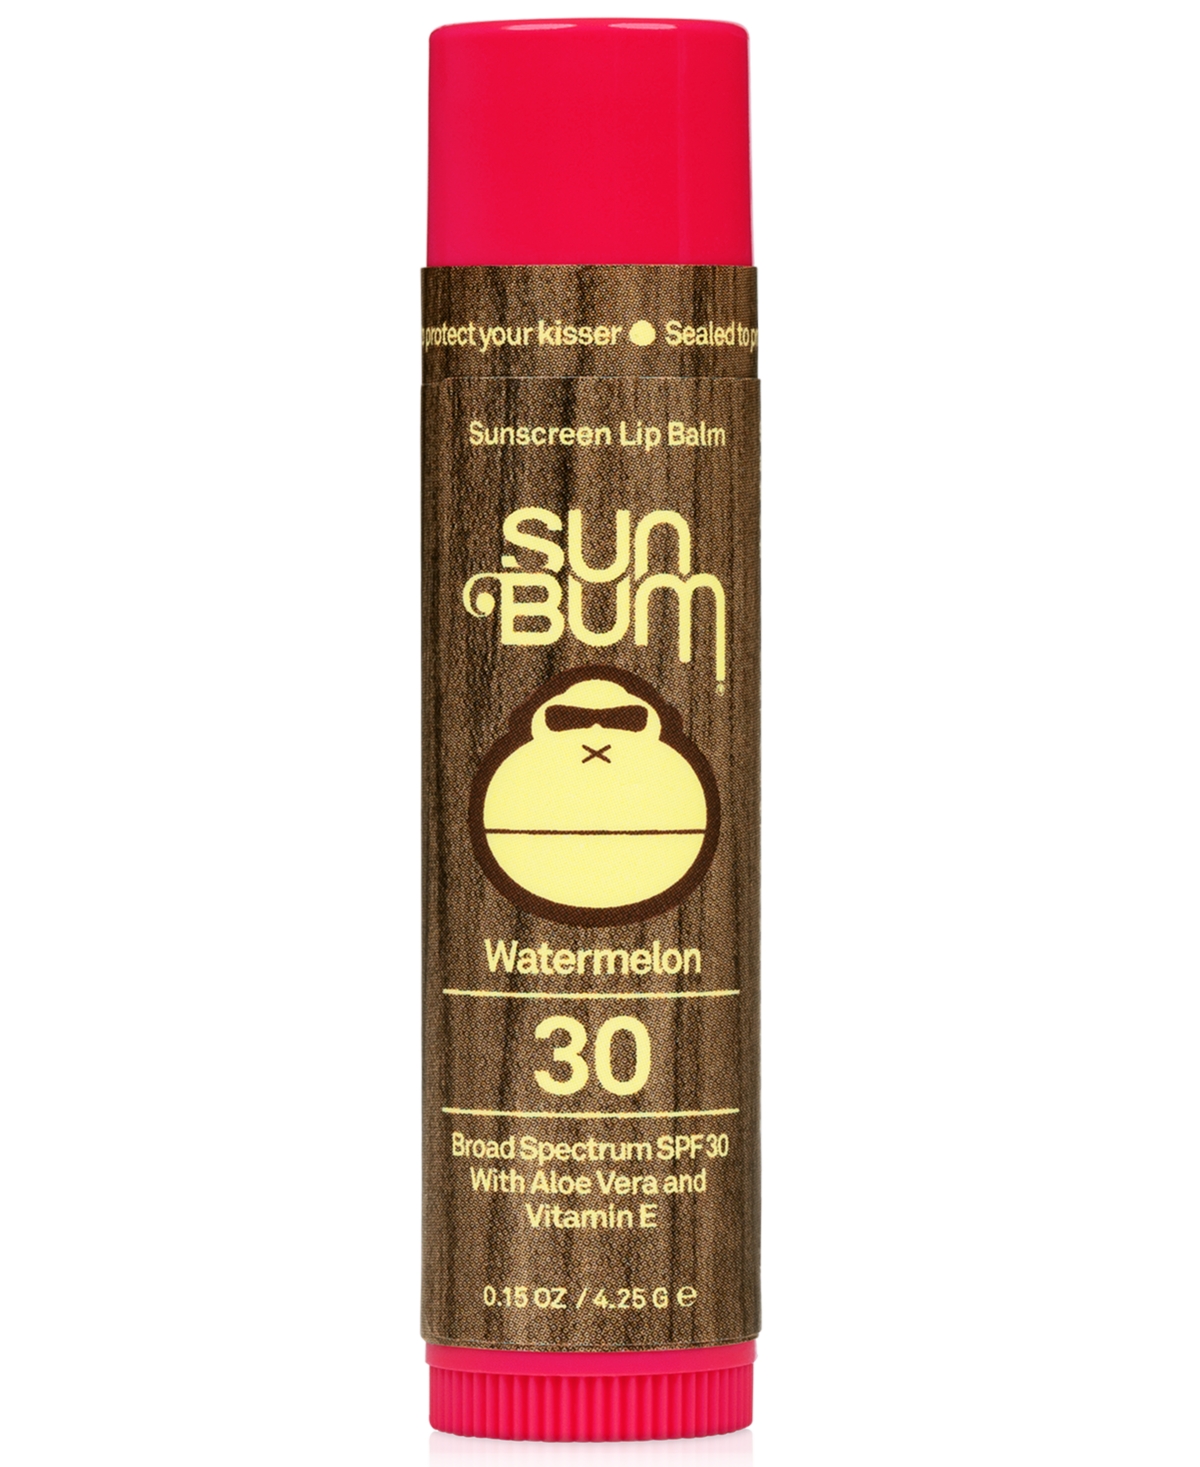 Sunscreen Lip Balm - Watermelon